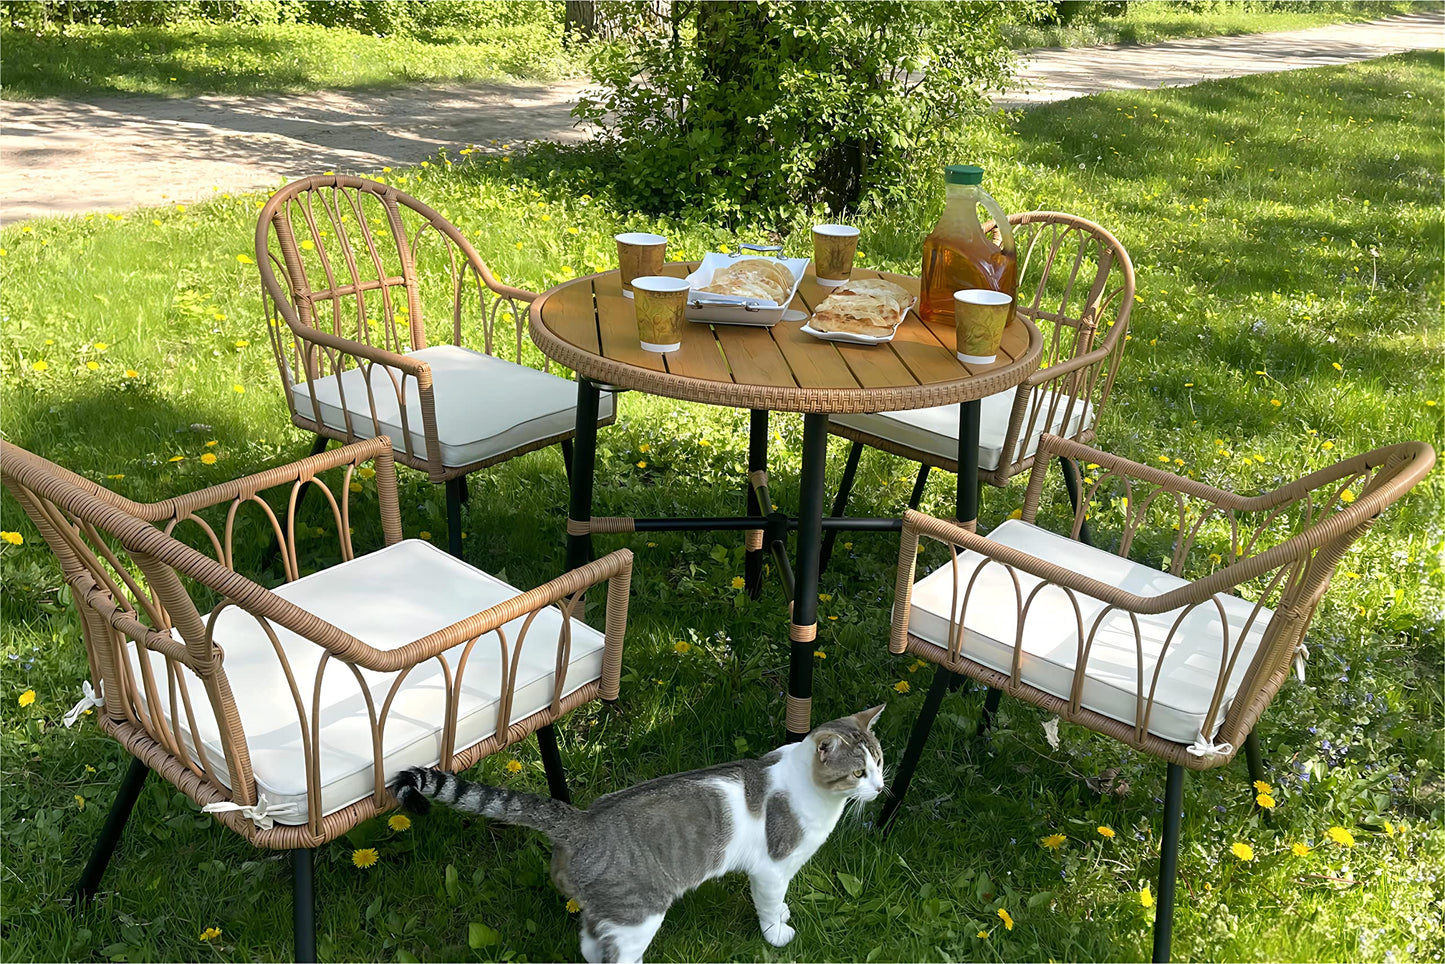 YITAHOME 5 Pieces Outdoor Patio Dining Table Chair Set,Wicker Patio Dining Set,Outdoor Rattan Dining Table Set for Patio, Backyard, Balcony, Garden (with Umbrella Hole)